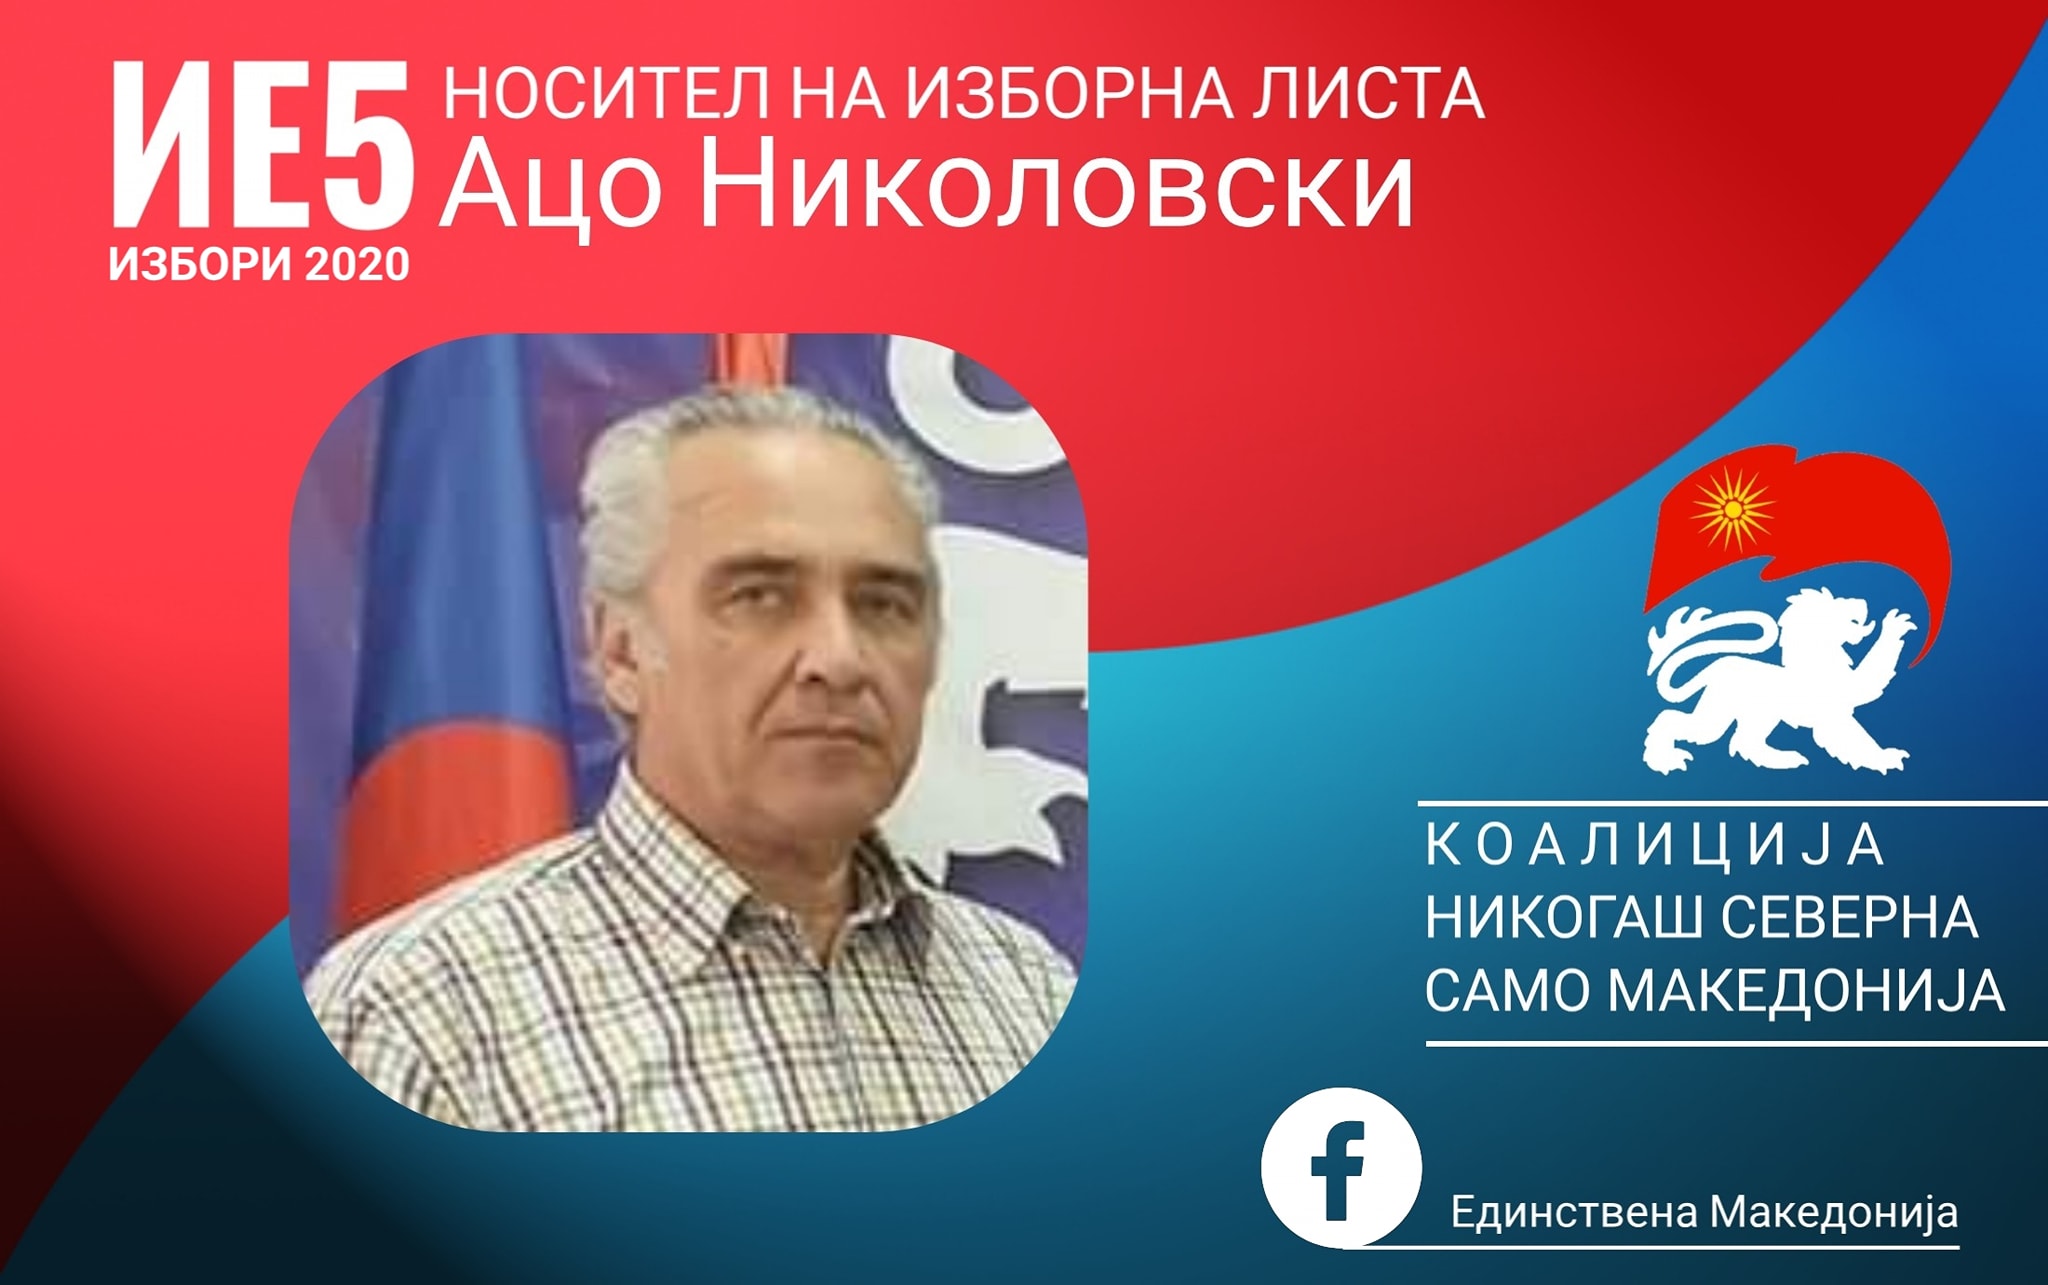 Ацо Николовски носител на листа во петтата изборна единица